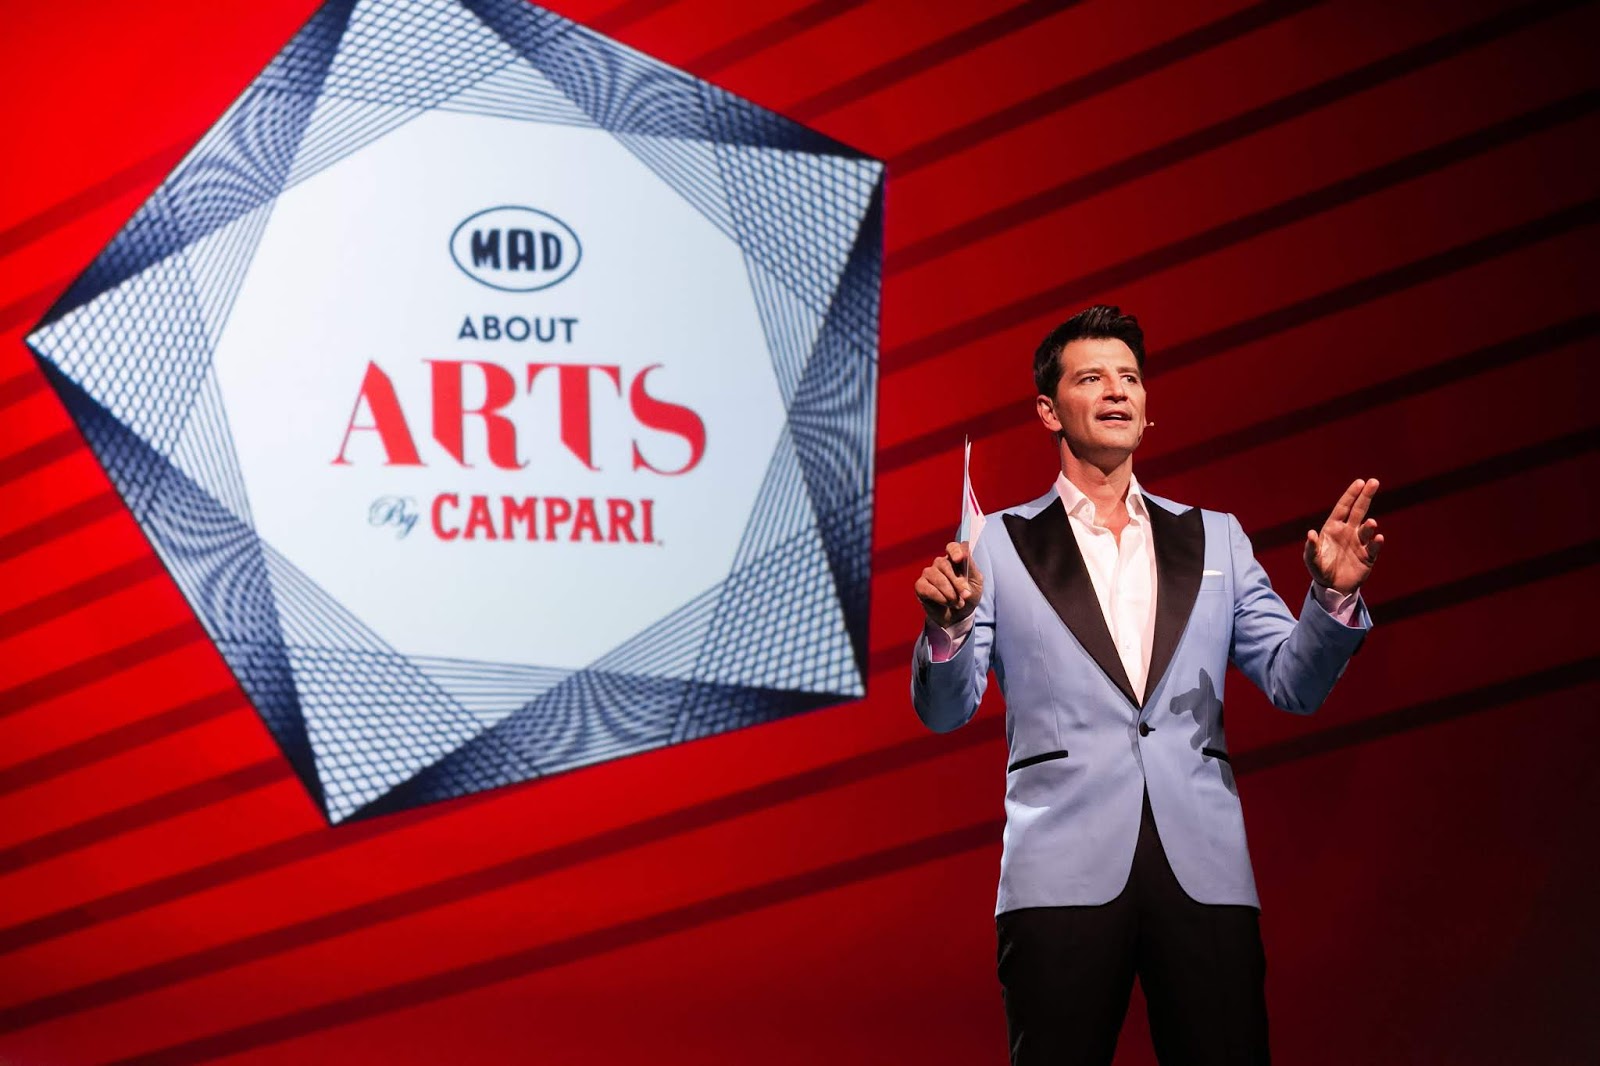 Mad About Arts by Campari το Σάββατο στις 22:45 στον ΑΝΤ1 - Φωτογραφία 1